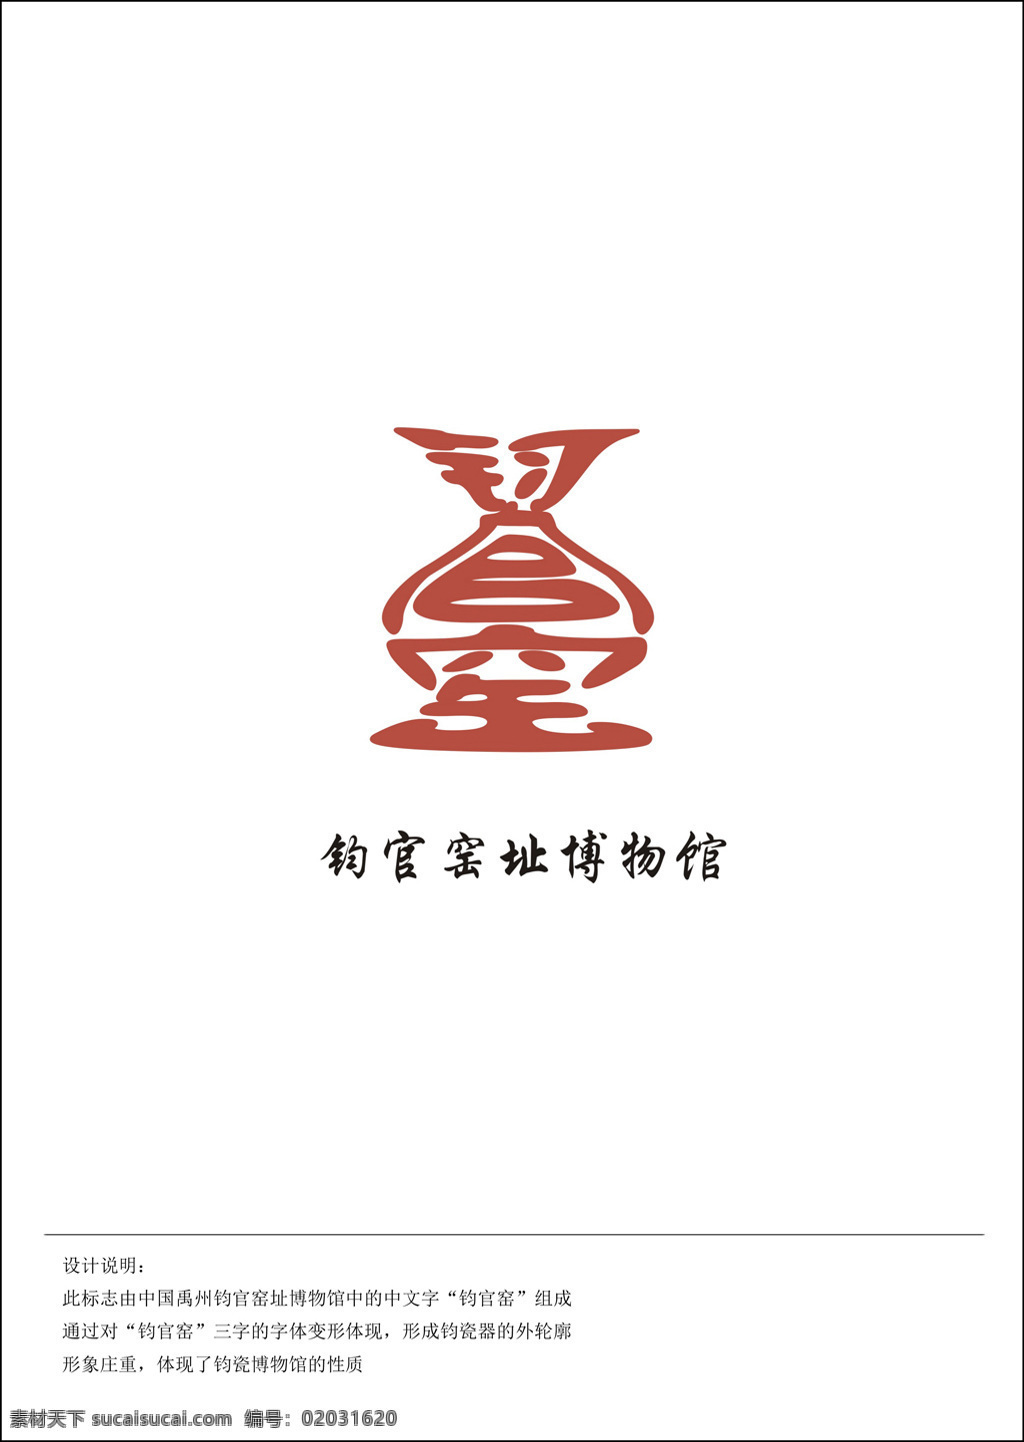 中文 钧 官窑 logo 字体 变形 钧官窑